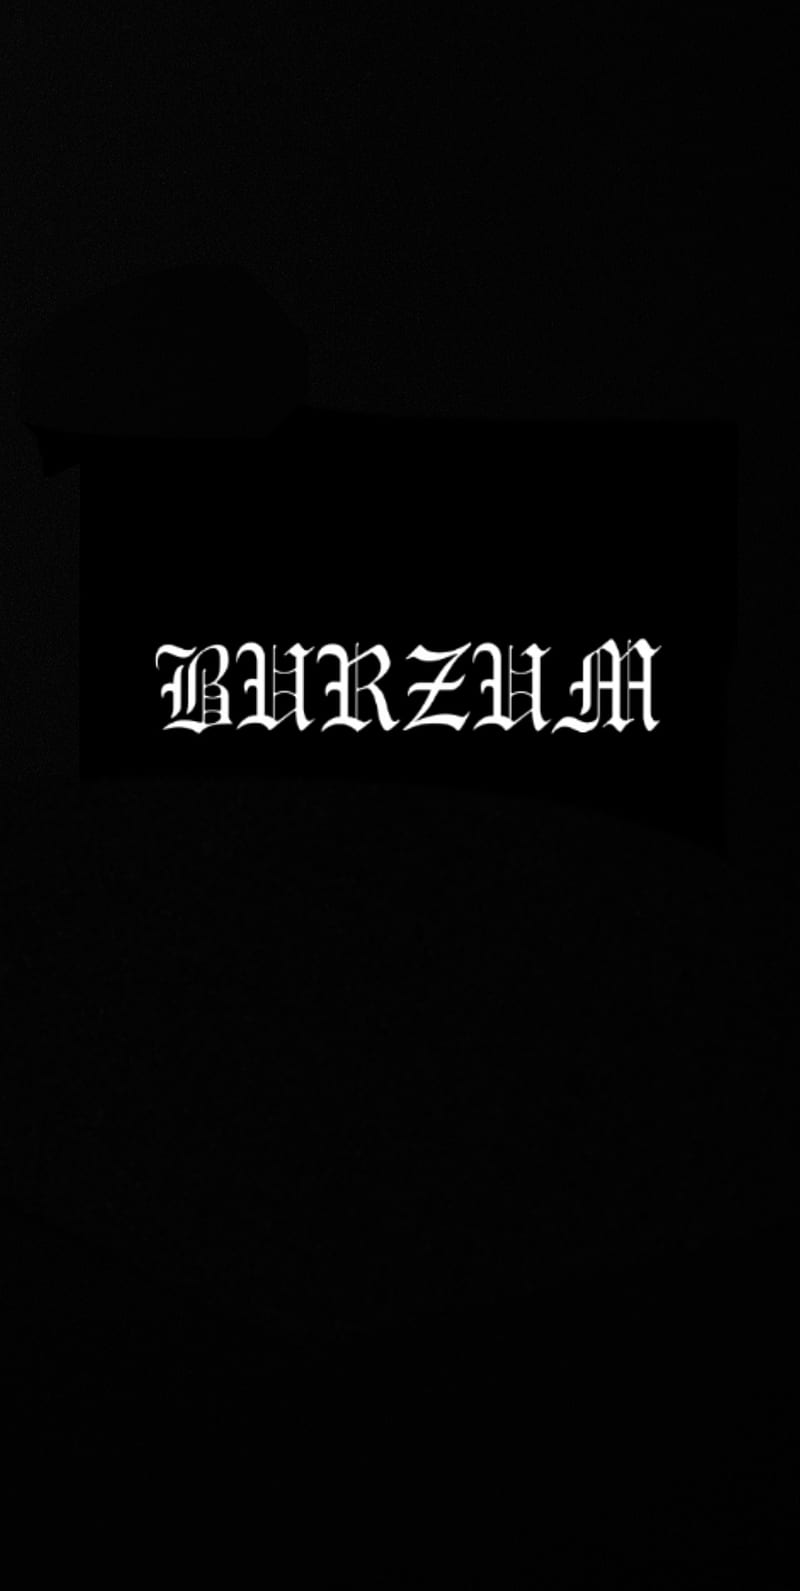 Yzixulet Burzum - Filosofem #1 Poster Retro Metal Tin Vintage Sign 12